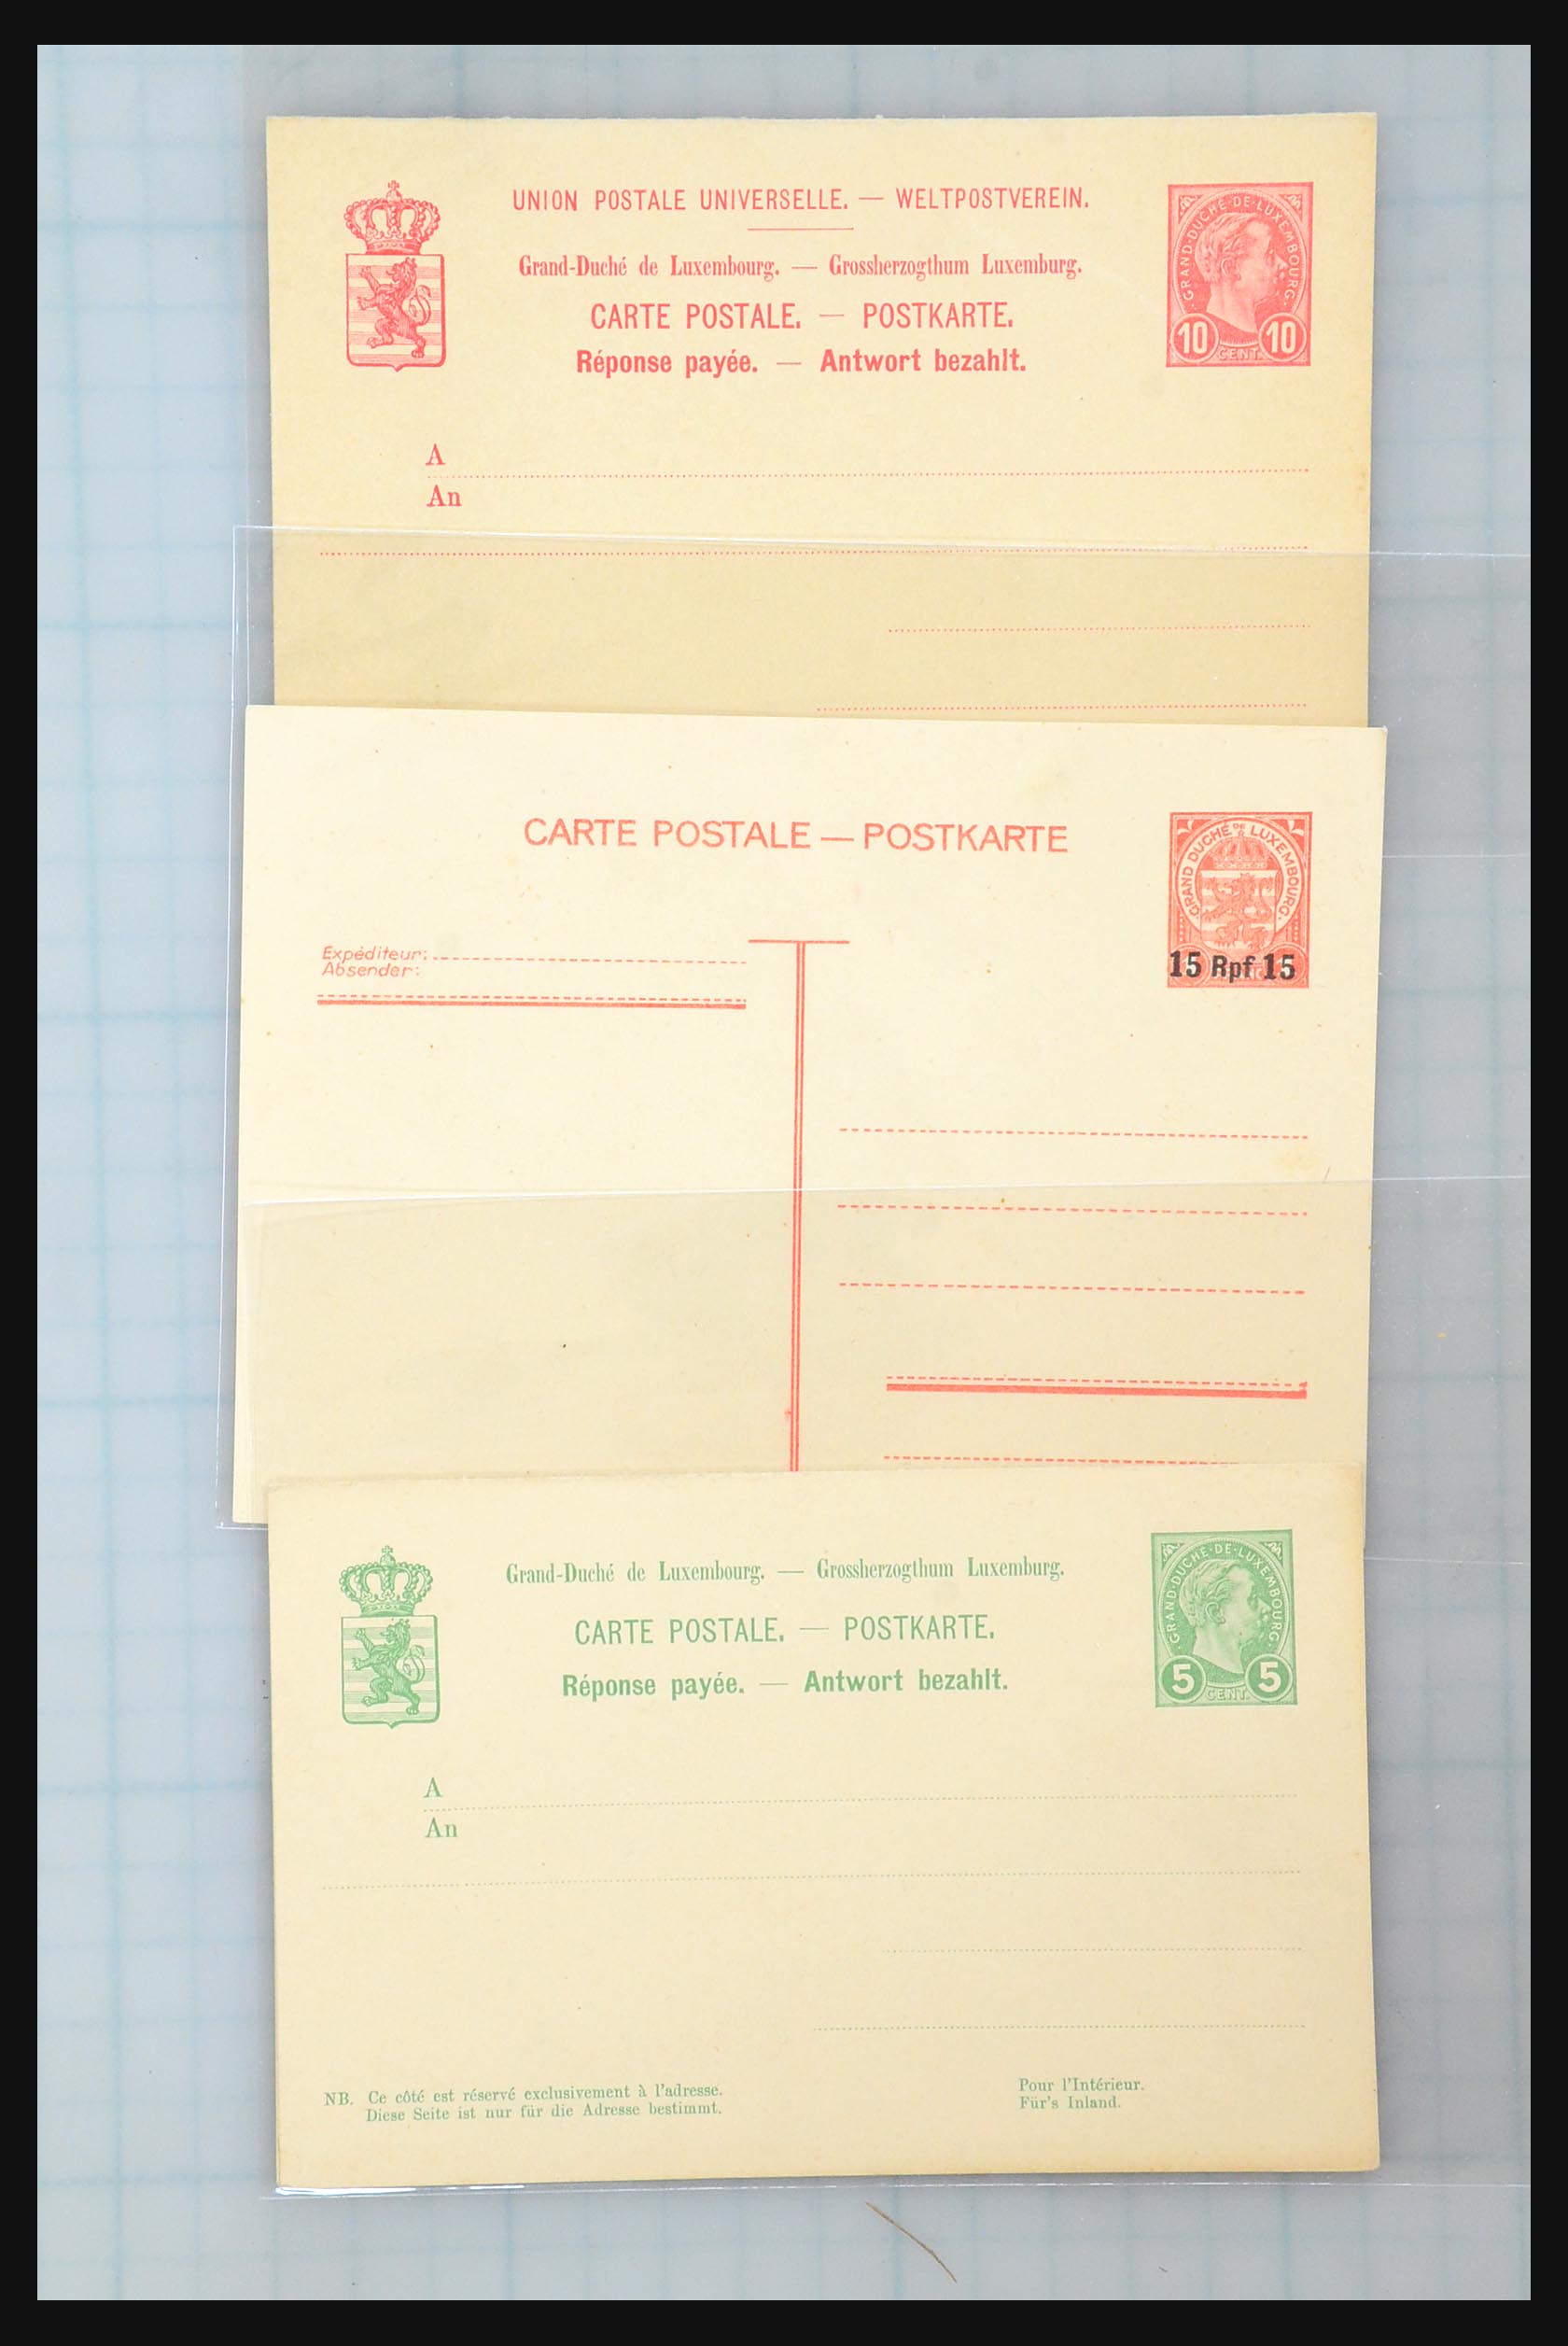 31358 082 - 31358 Portugal/Luxemburg/Griekenland brieven 1880-1960.